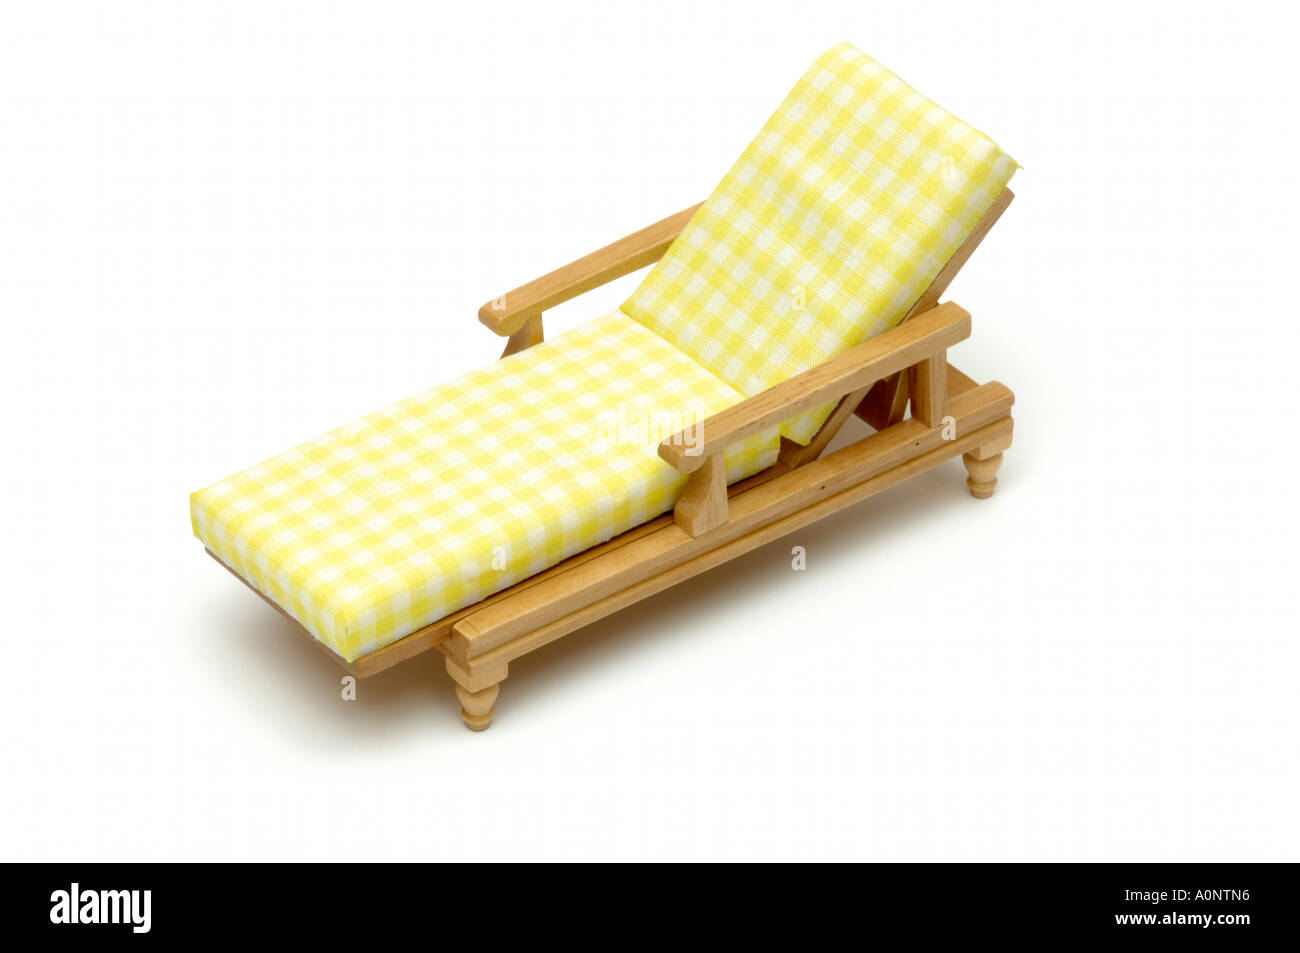 Bain de soleil oriental lounge chaise en bois sur fond blanc Banque D'Images